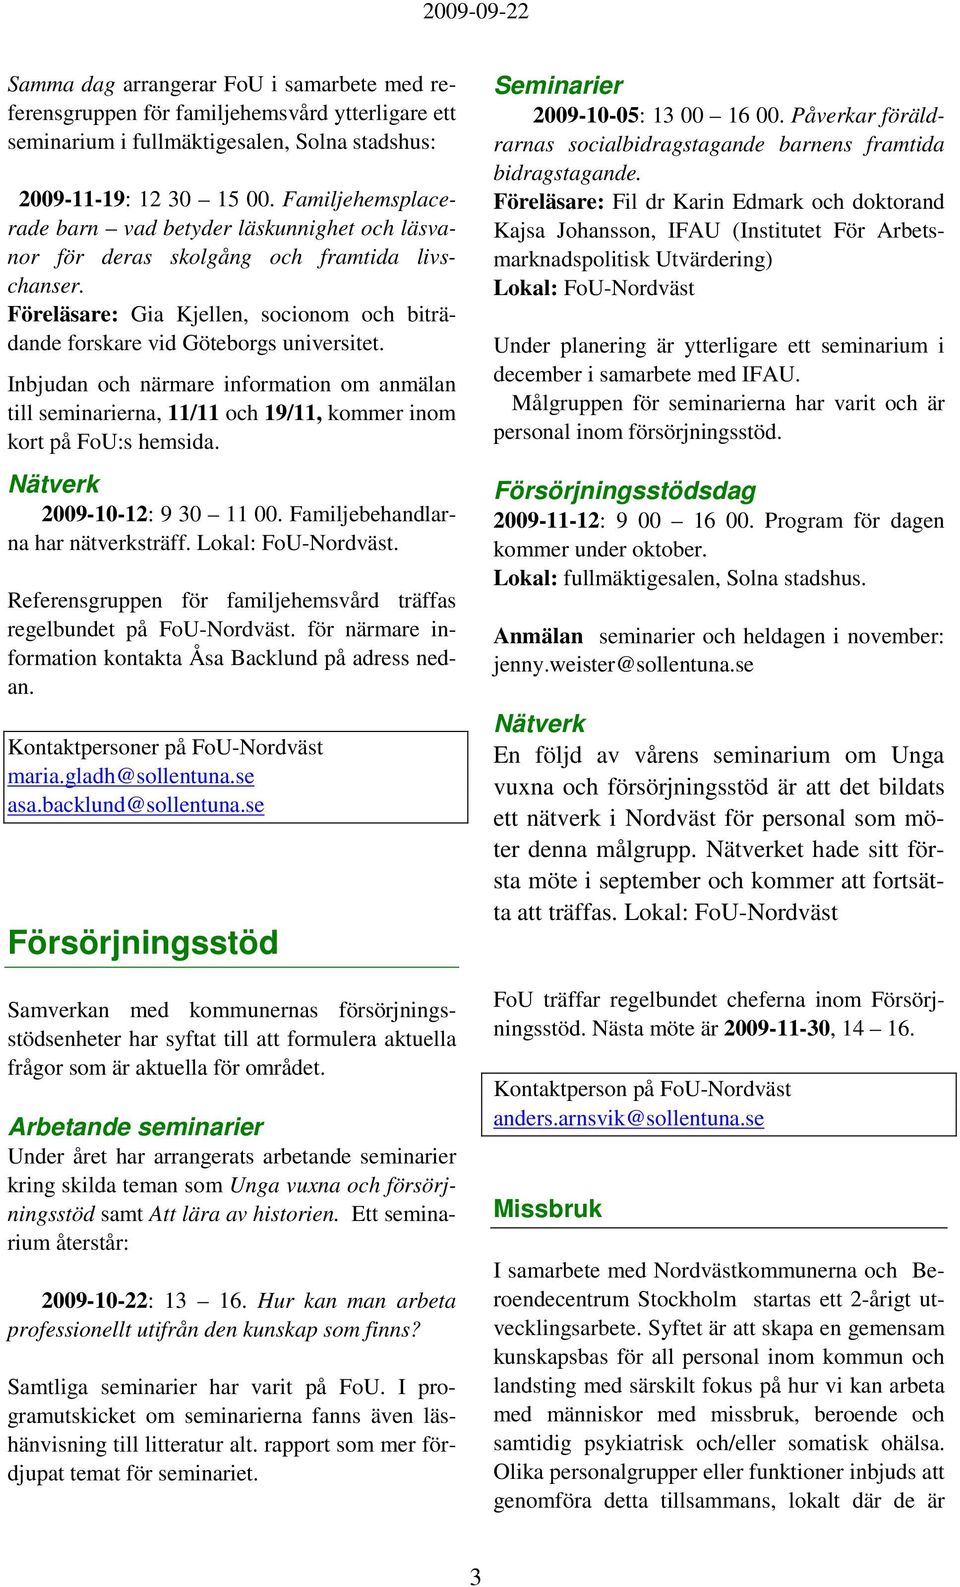 Inbjudan och närmare information om anmälan till seminarierna, 11/11 och 19/11, kommer inom kort på FoU:s hemsida. 2009-10-12: 9 30 11 00. Familjebehandlarna har nätverksträff. Lokal: FoU-Nordväst.